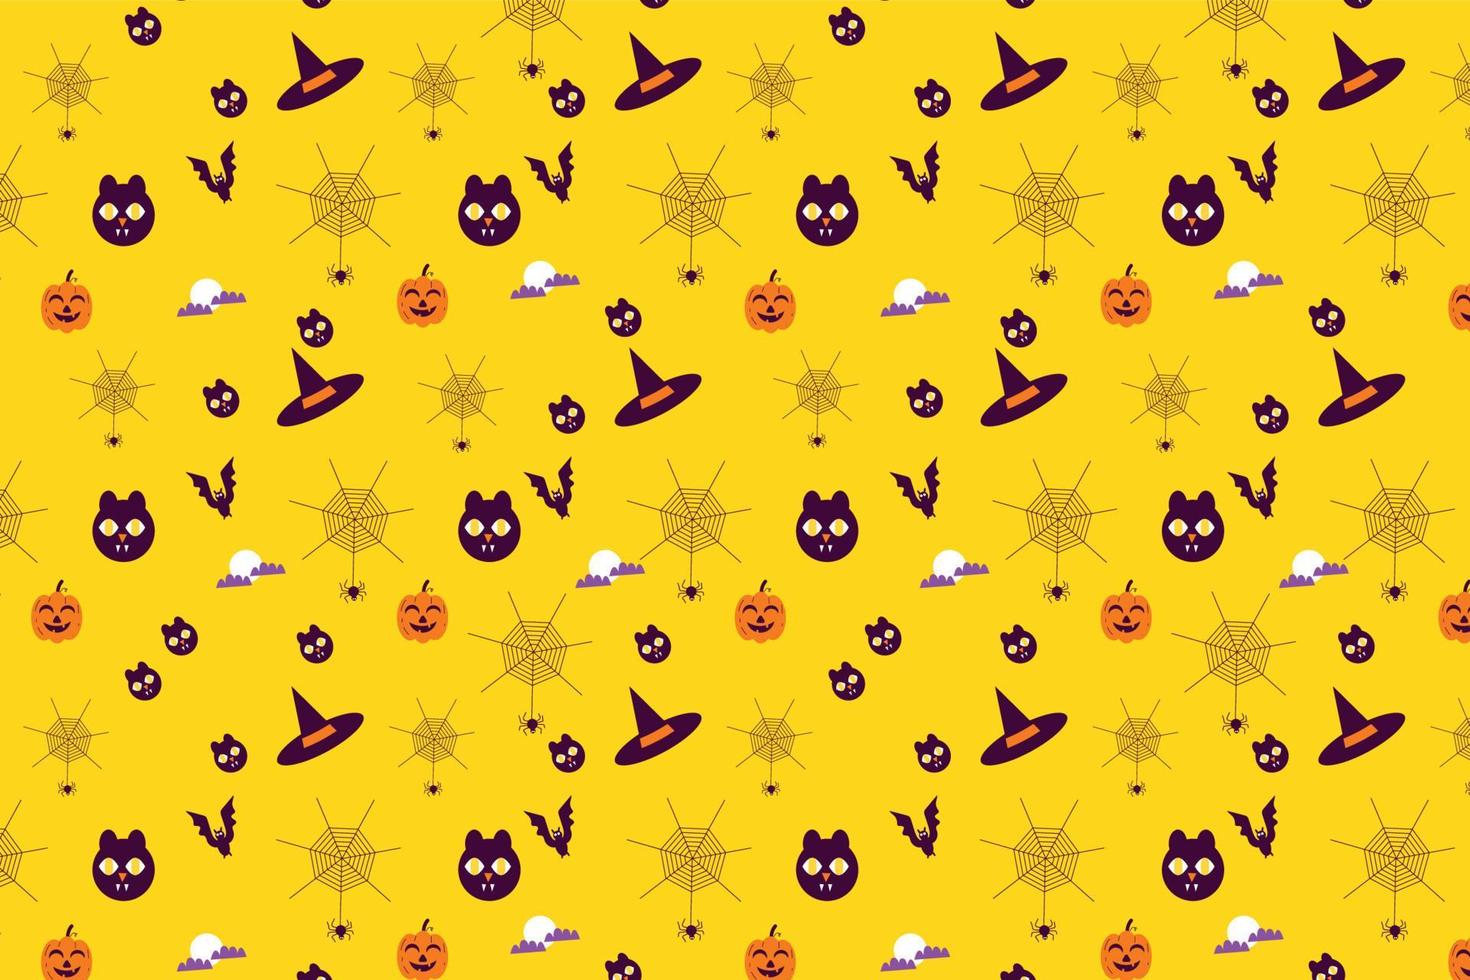 diseño de patrones sin fisuras de miedo de halloween con caras de gato y sombreros de bruja. vector de patrón mínimo abstracto para el evento de halloween. patrón sin fin con telarañas sobre un fondo amarillo.